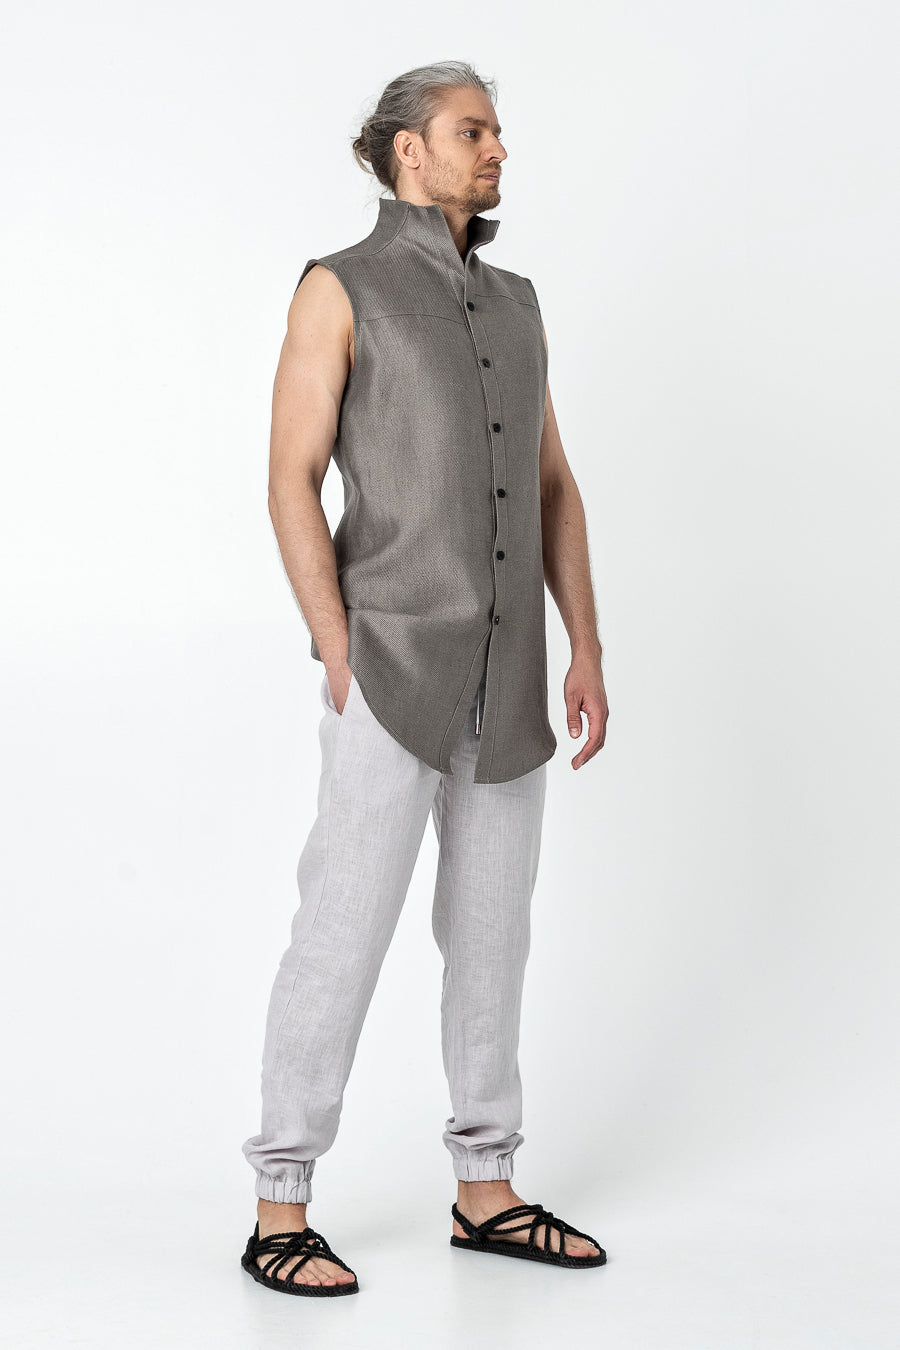 SHIRO | Linen modern vest for men - Mezzoroni